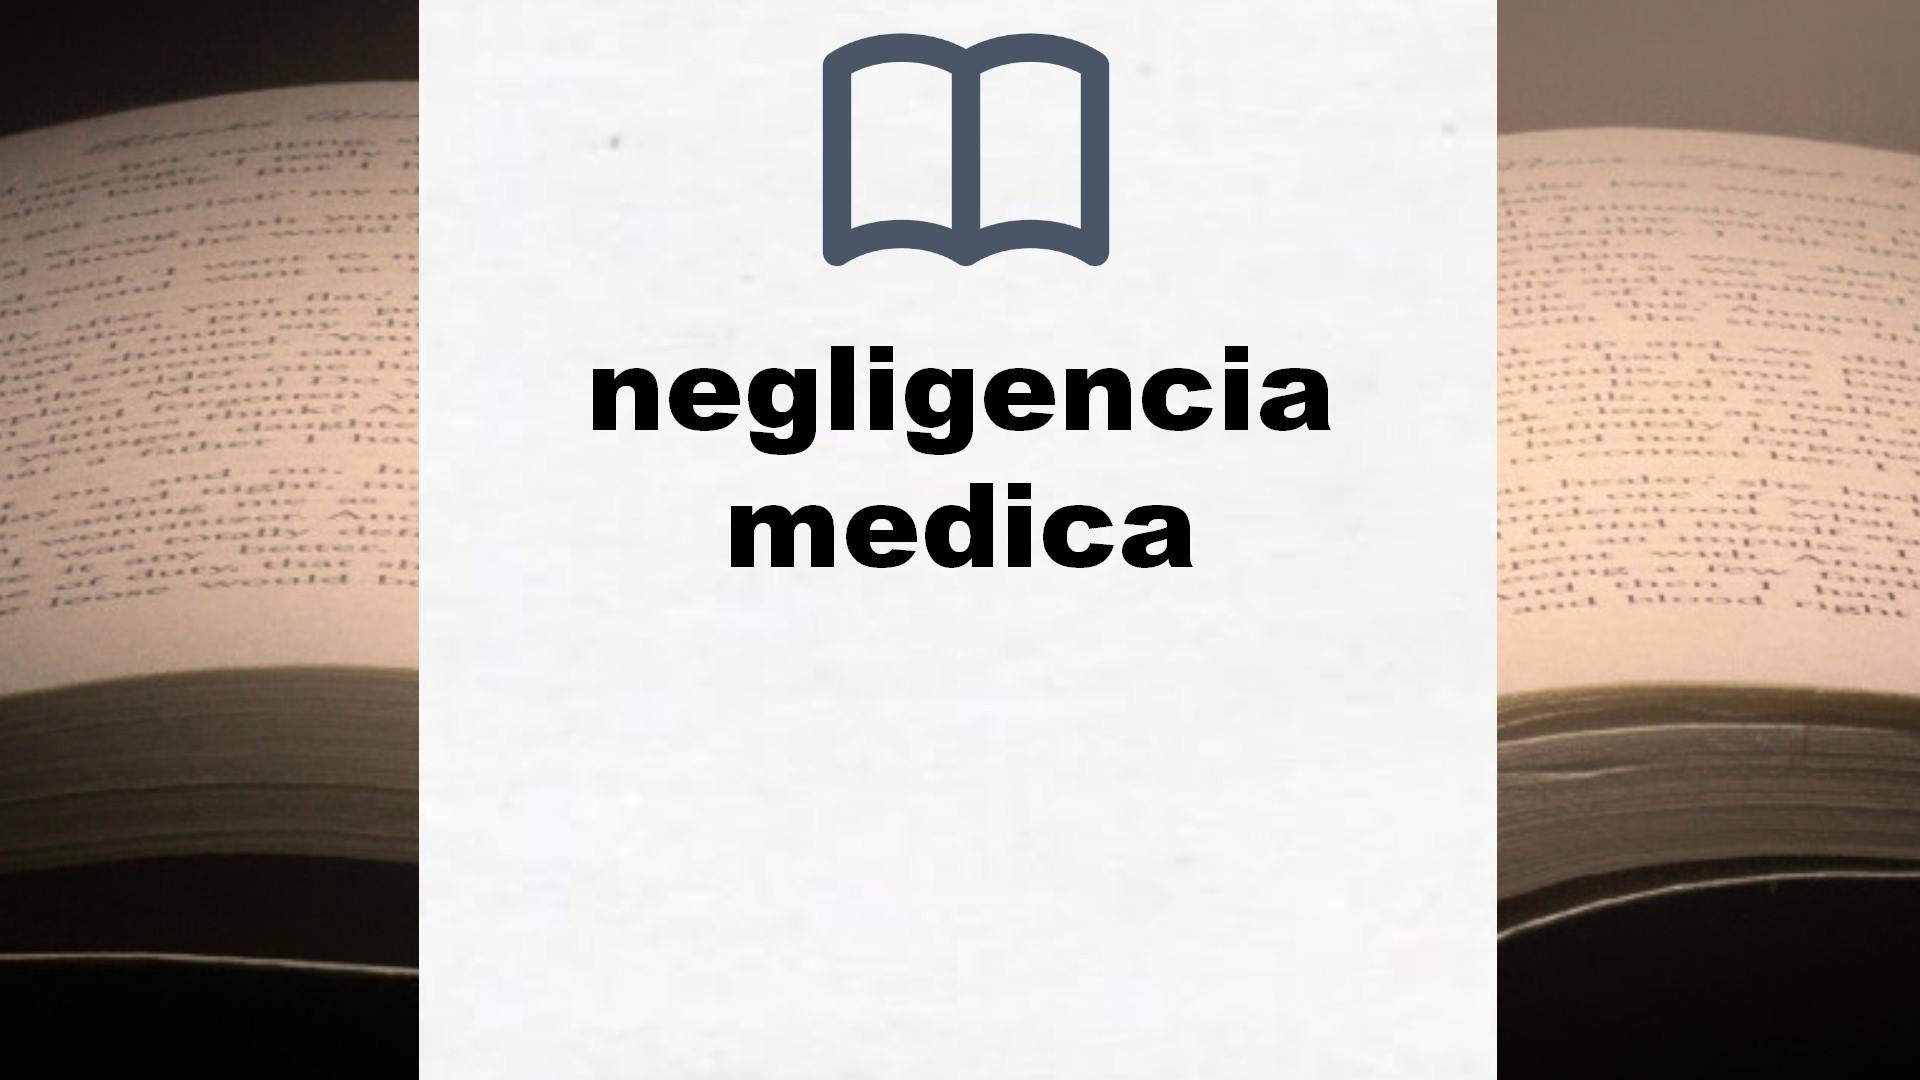 Libros sobre negligencia medica